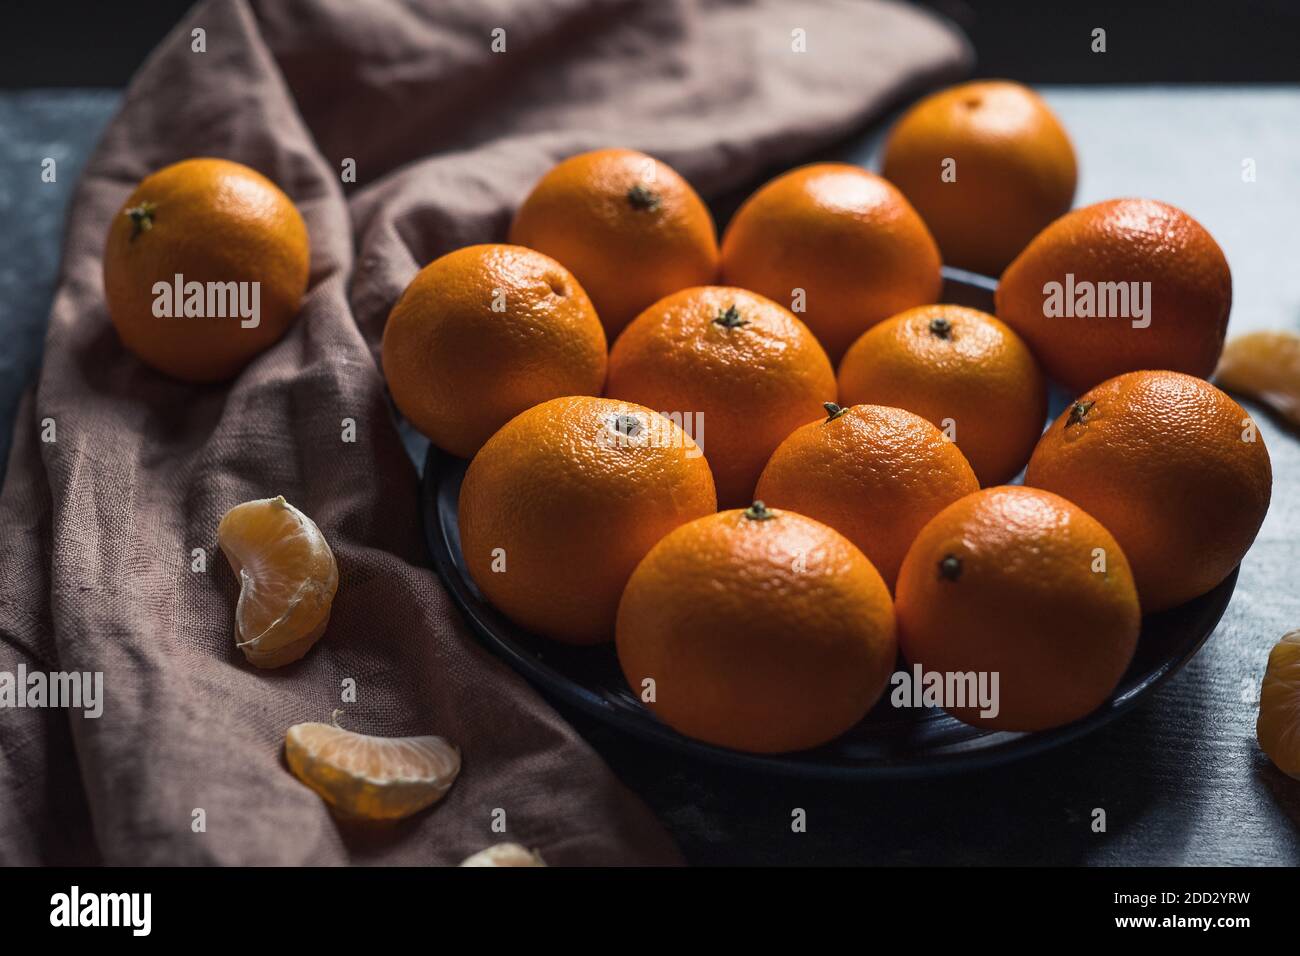 Pile de mandarine orange mûre ronde non pelée dans une assiette. Banque D'Images